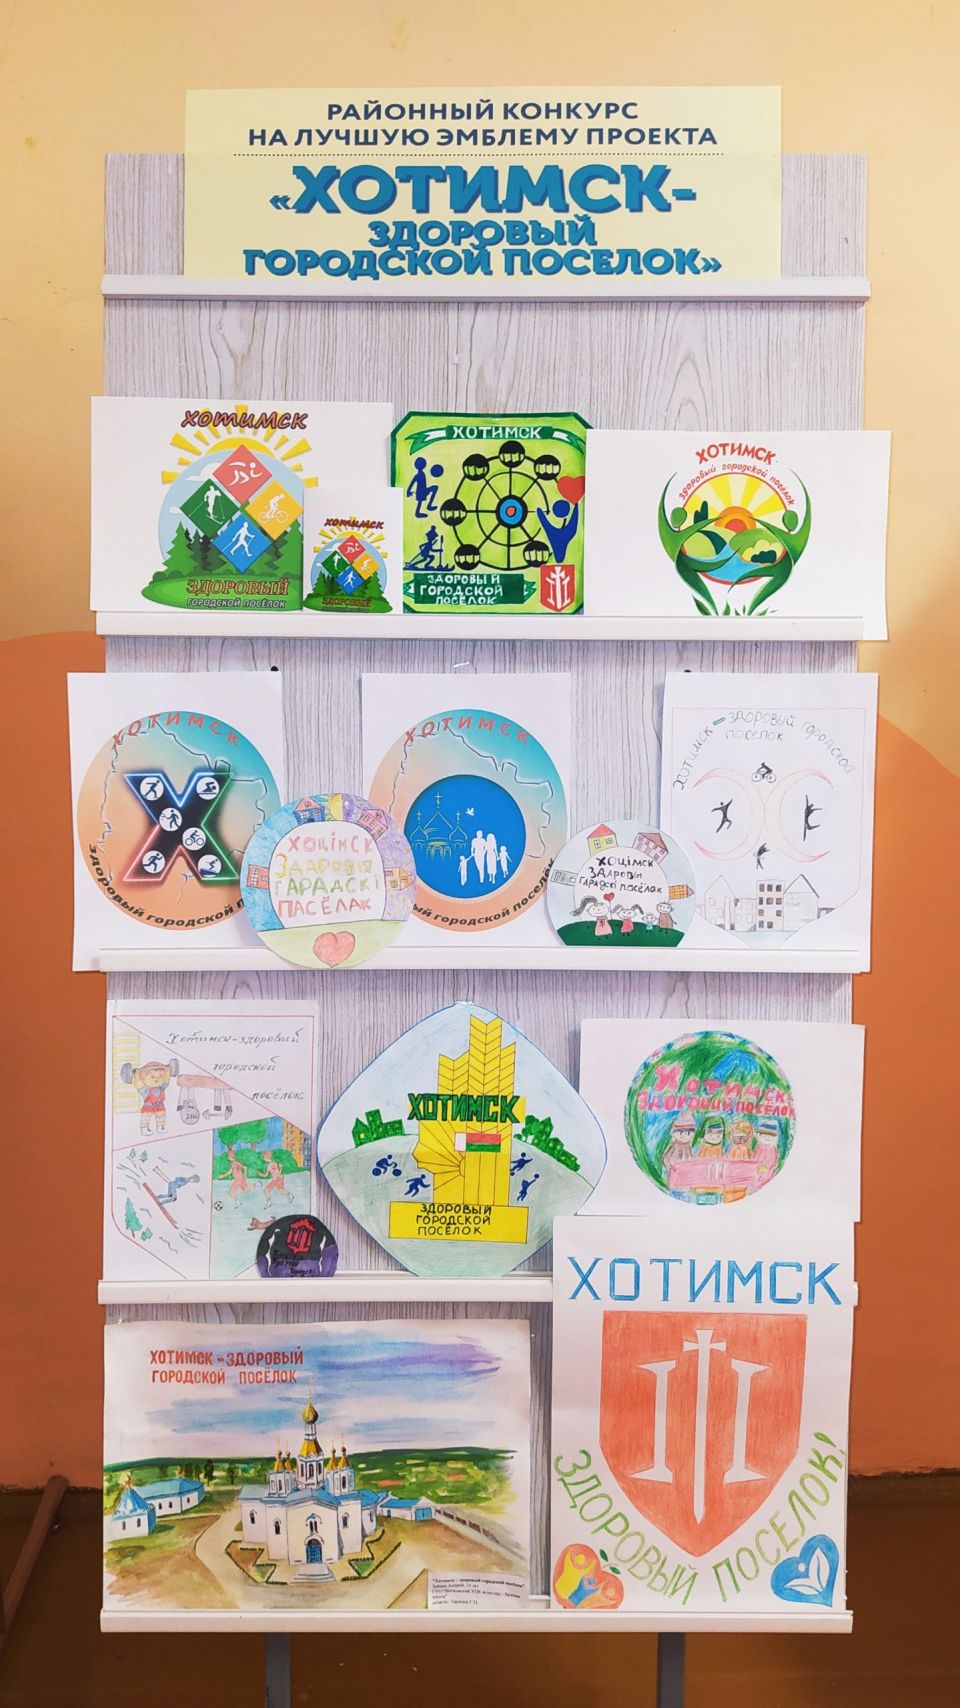 Прошел конкурс на лучшую эмблему проекта “Хотимск – здоровый городской посёлок”. Узнаем, кто стал победителем